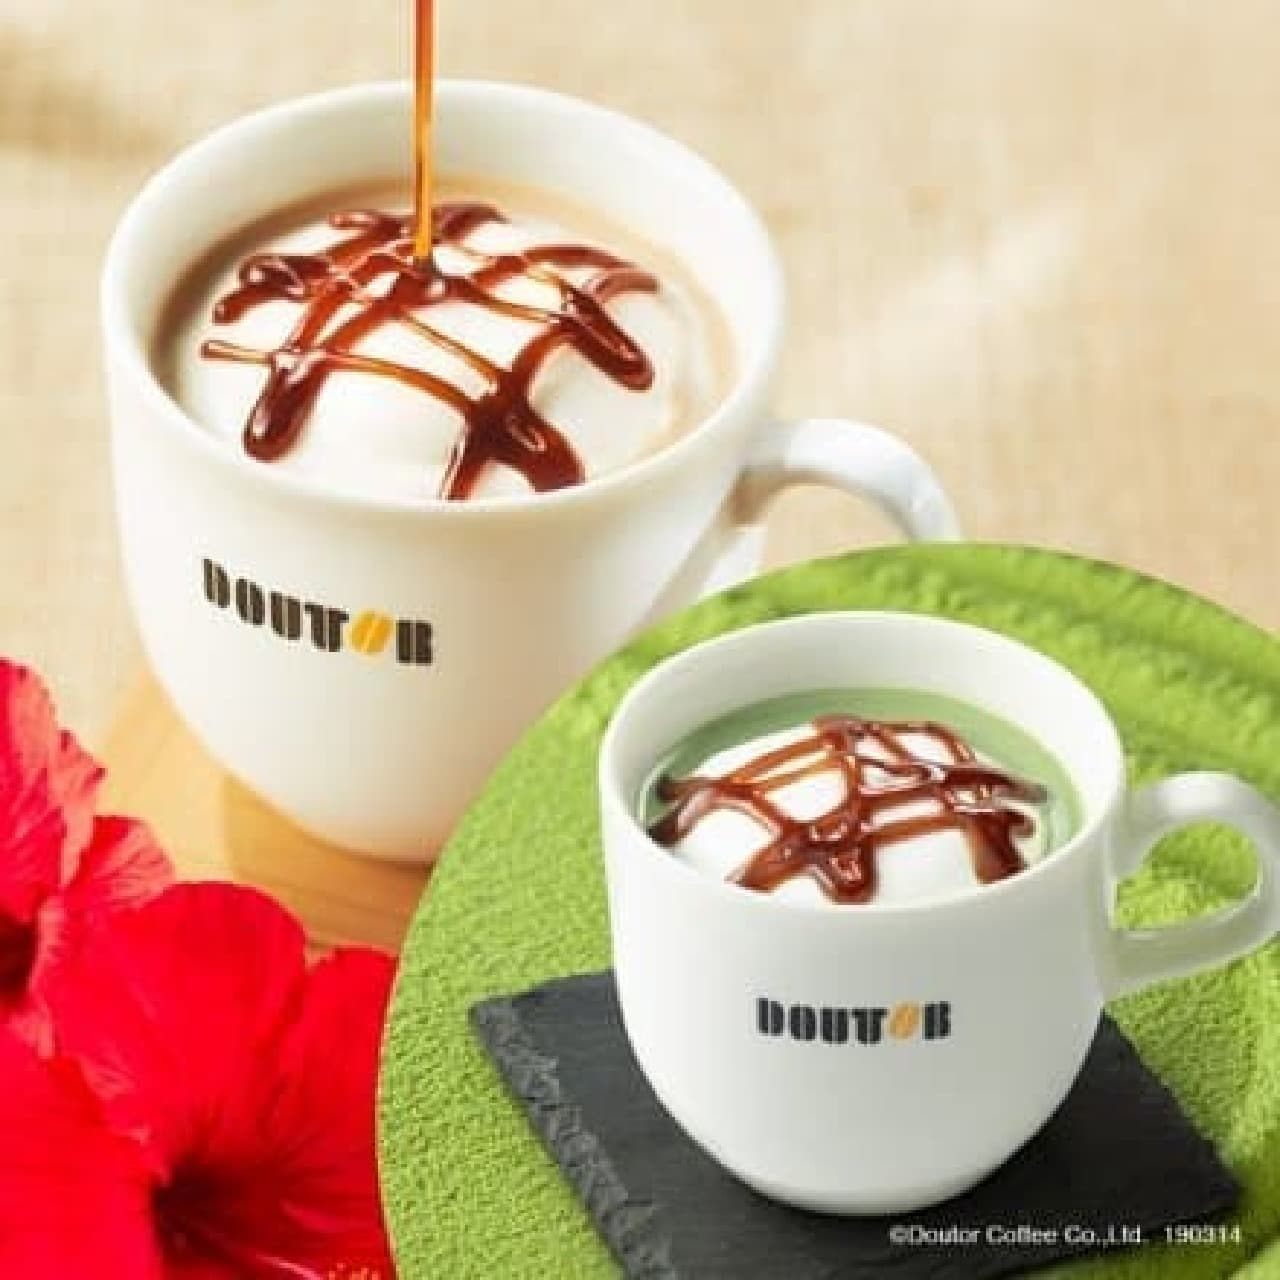 Doutor "Okinawa brown sugar latte" "Okinawa brown sugar matcha latte"